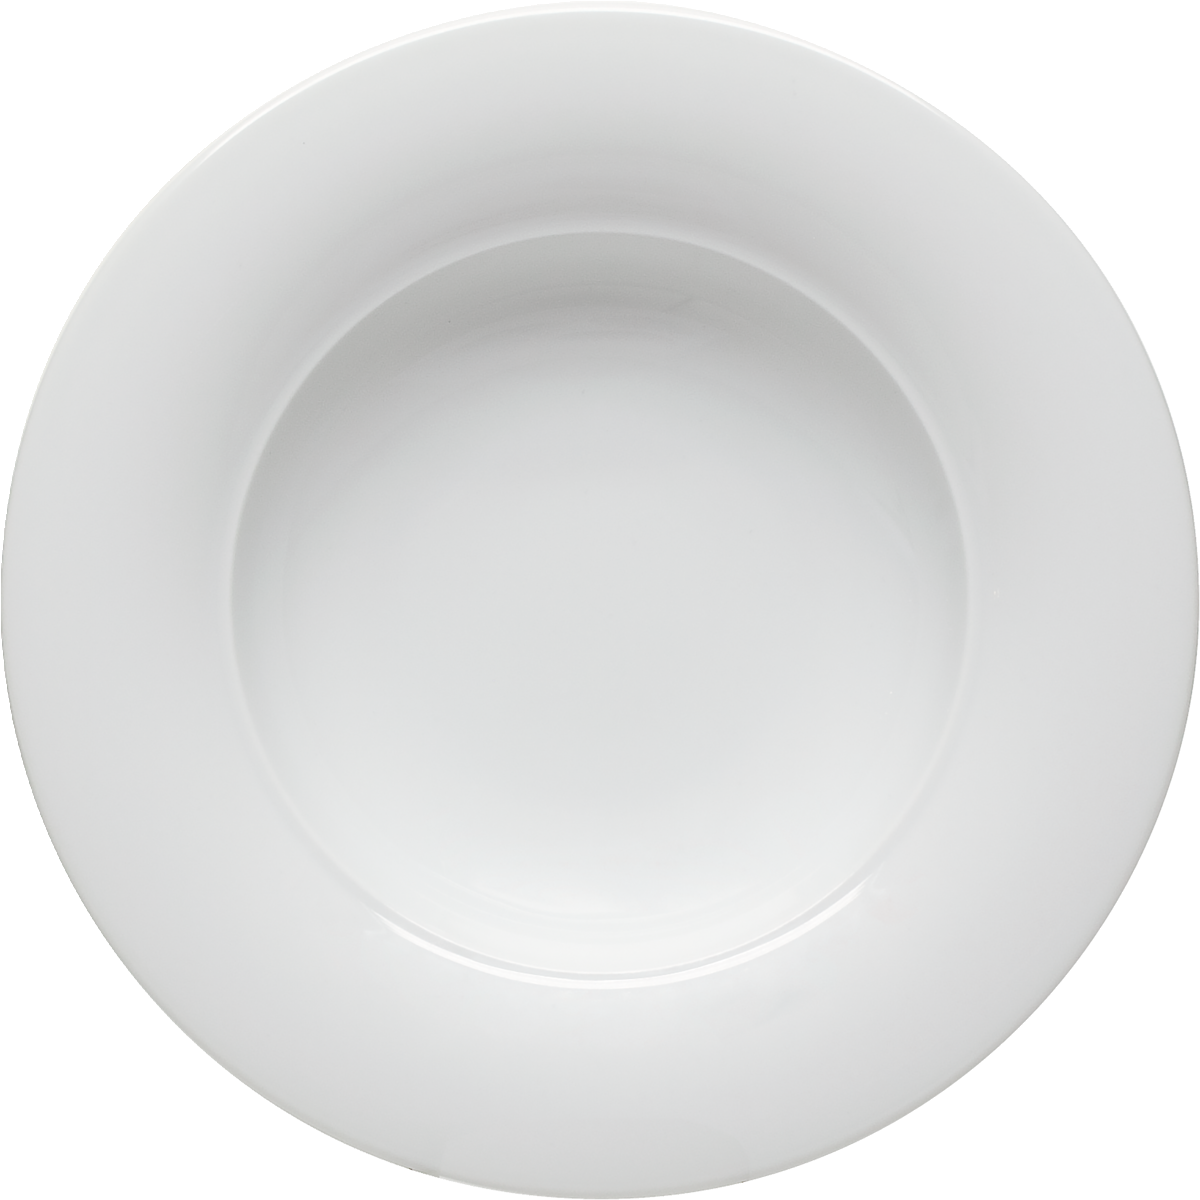 Plate deep round wide rim 24cm